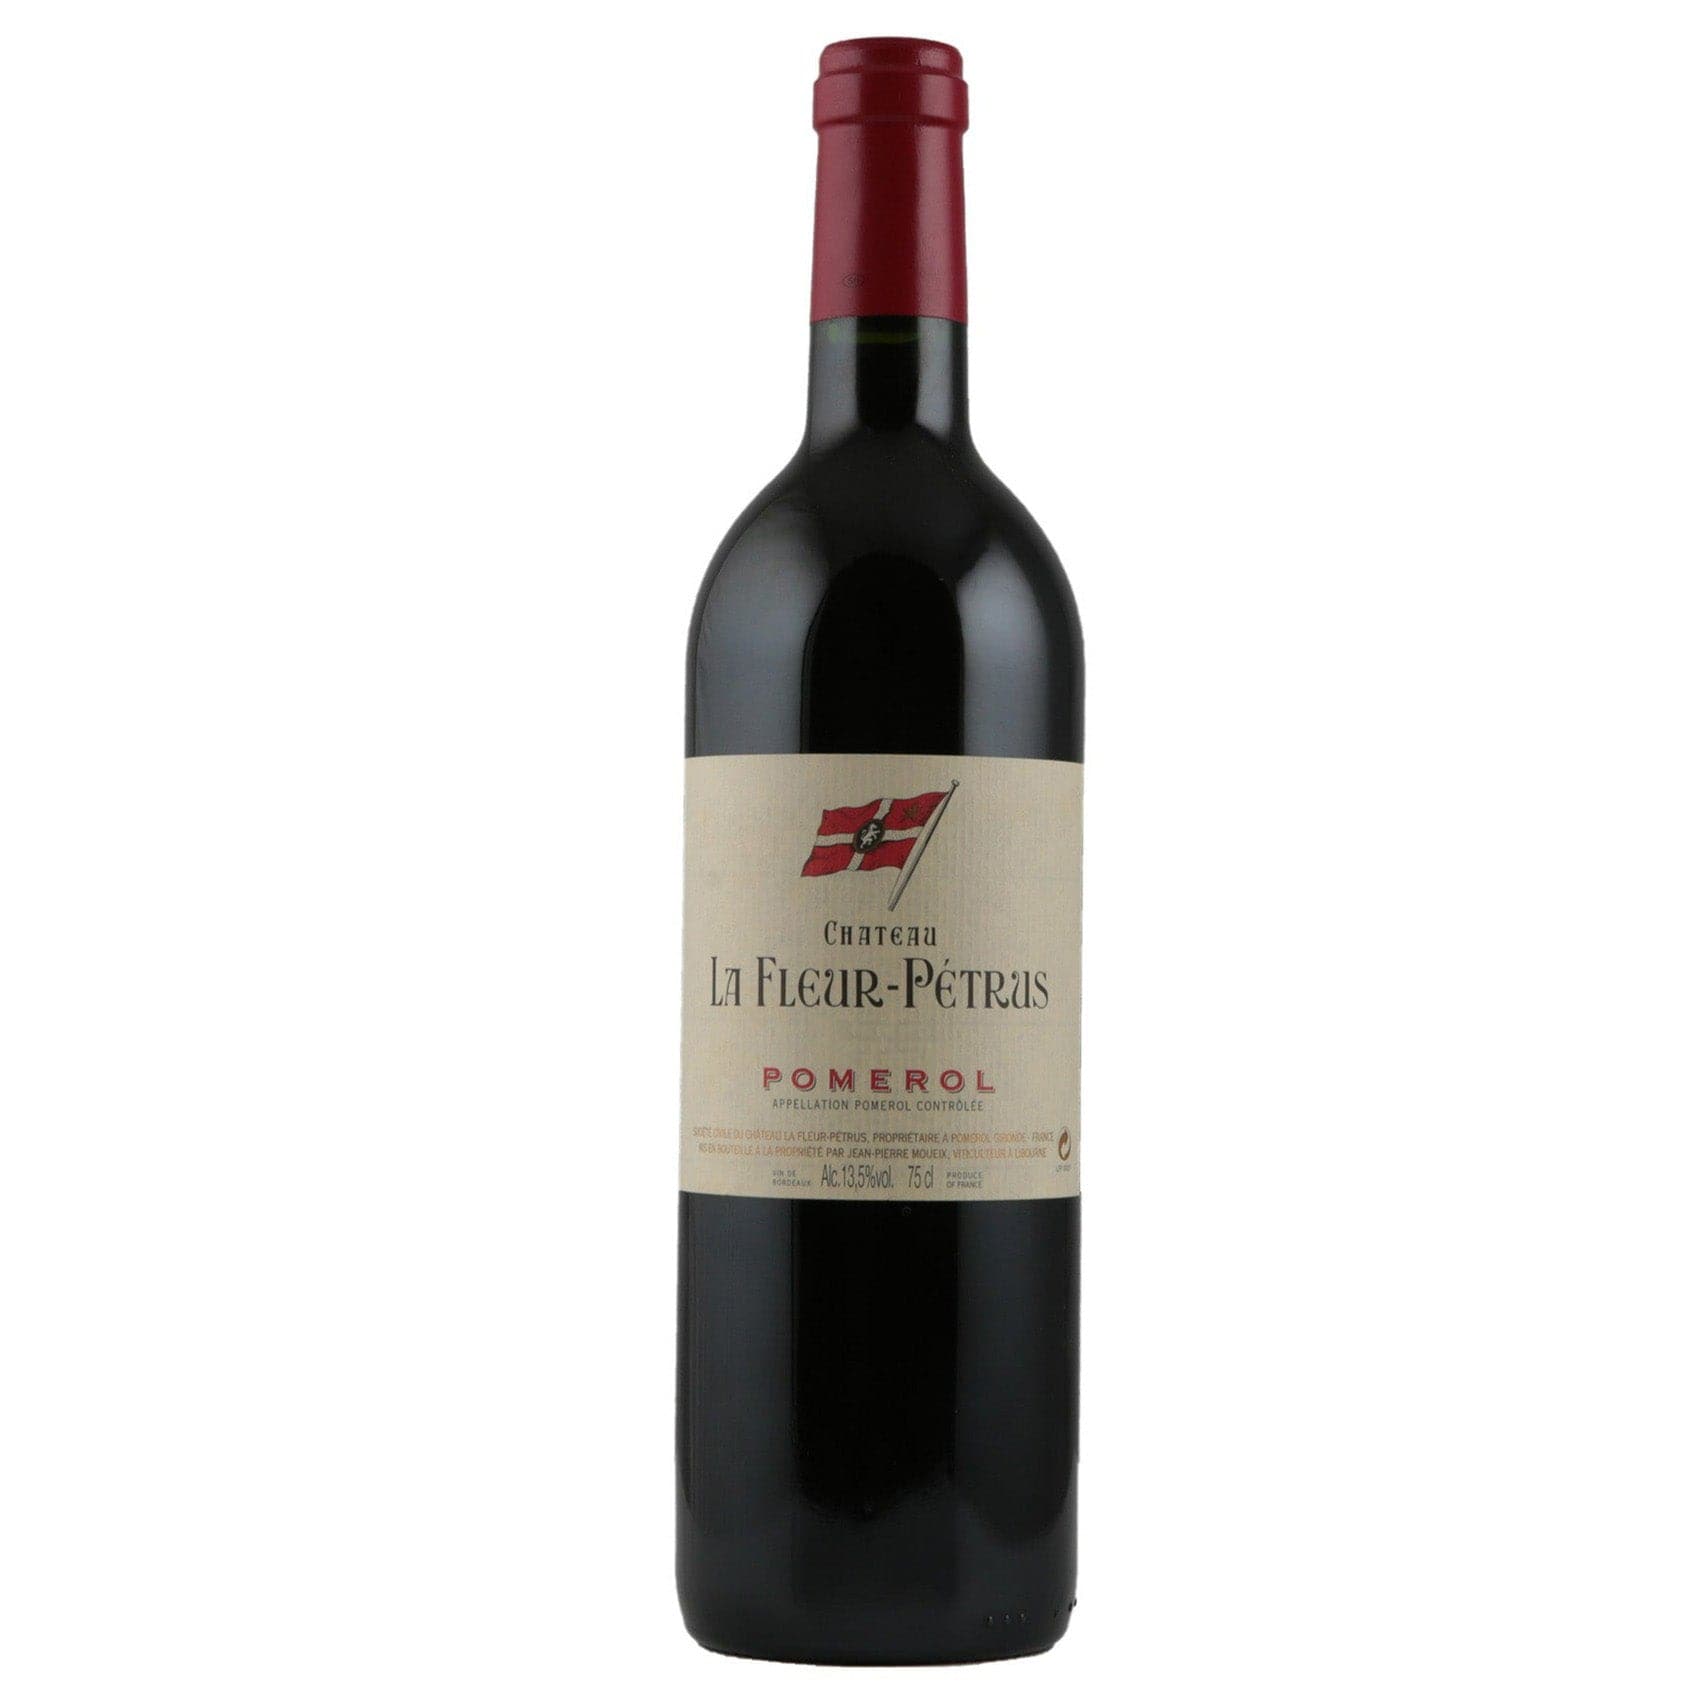 Single bottle of Red wine Ch. La Fleur-Petrus, Ch. La Fleur-Petrus, Pomerol, 2009 91% Merlot, 6% Cabernet Franc & 3% Petit Verdot